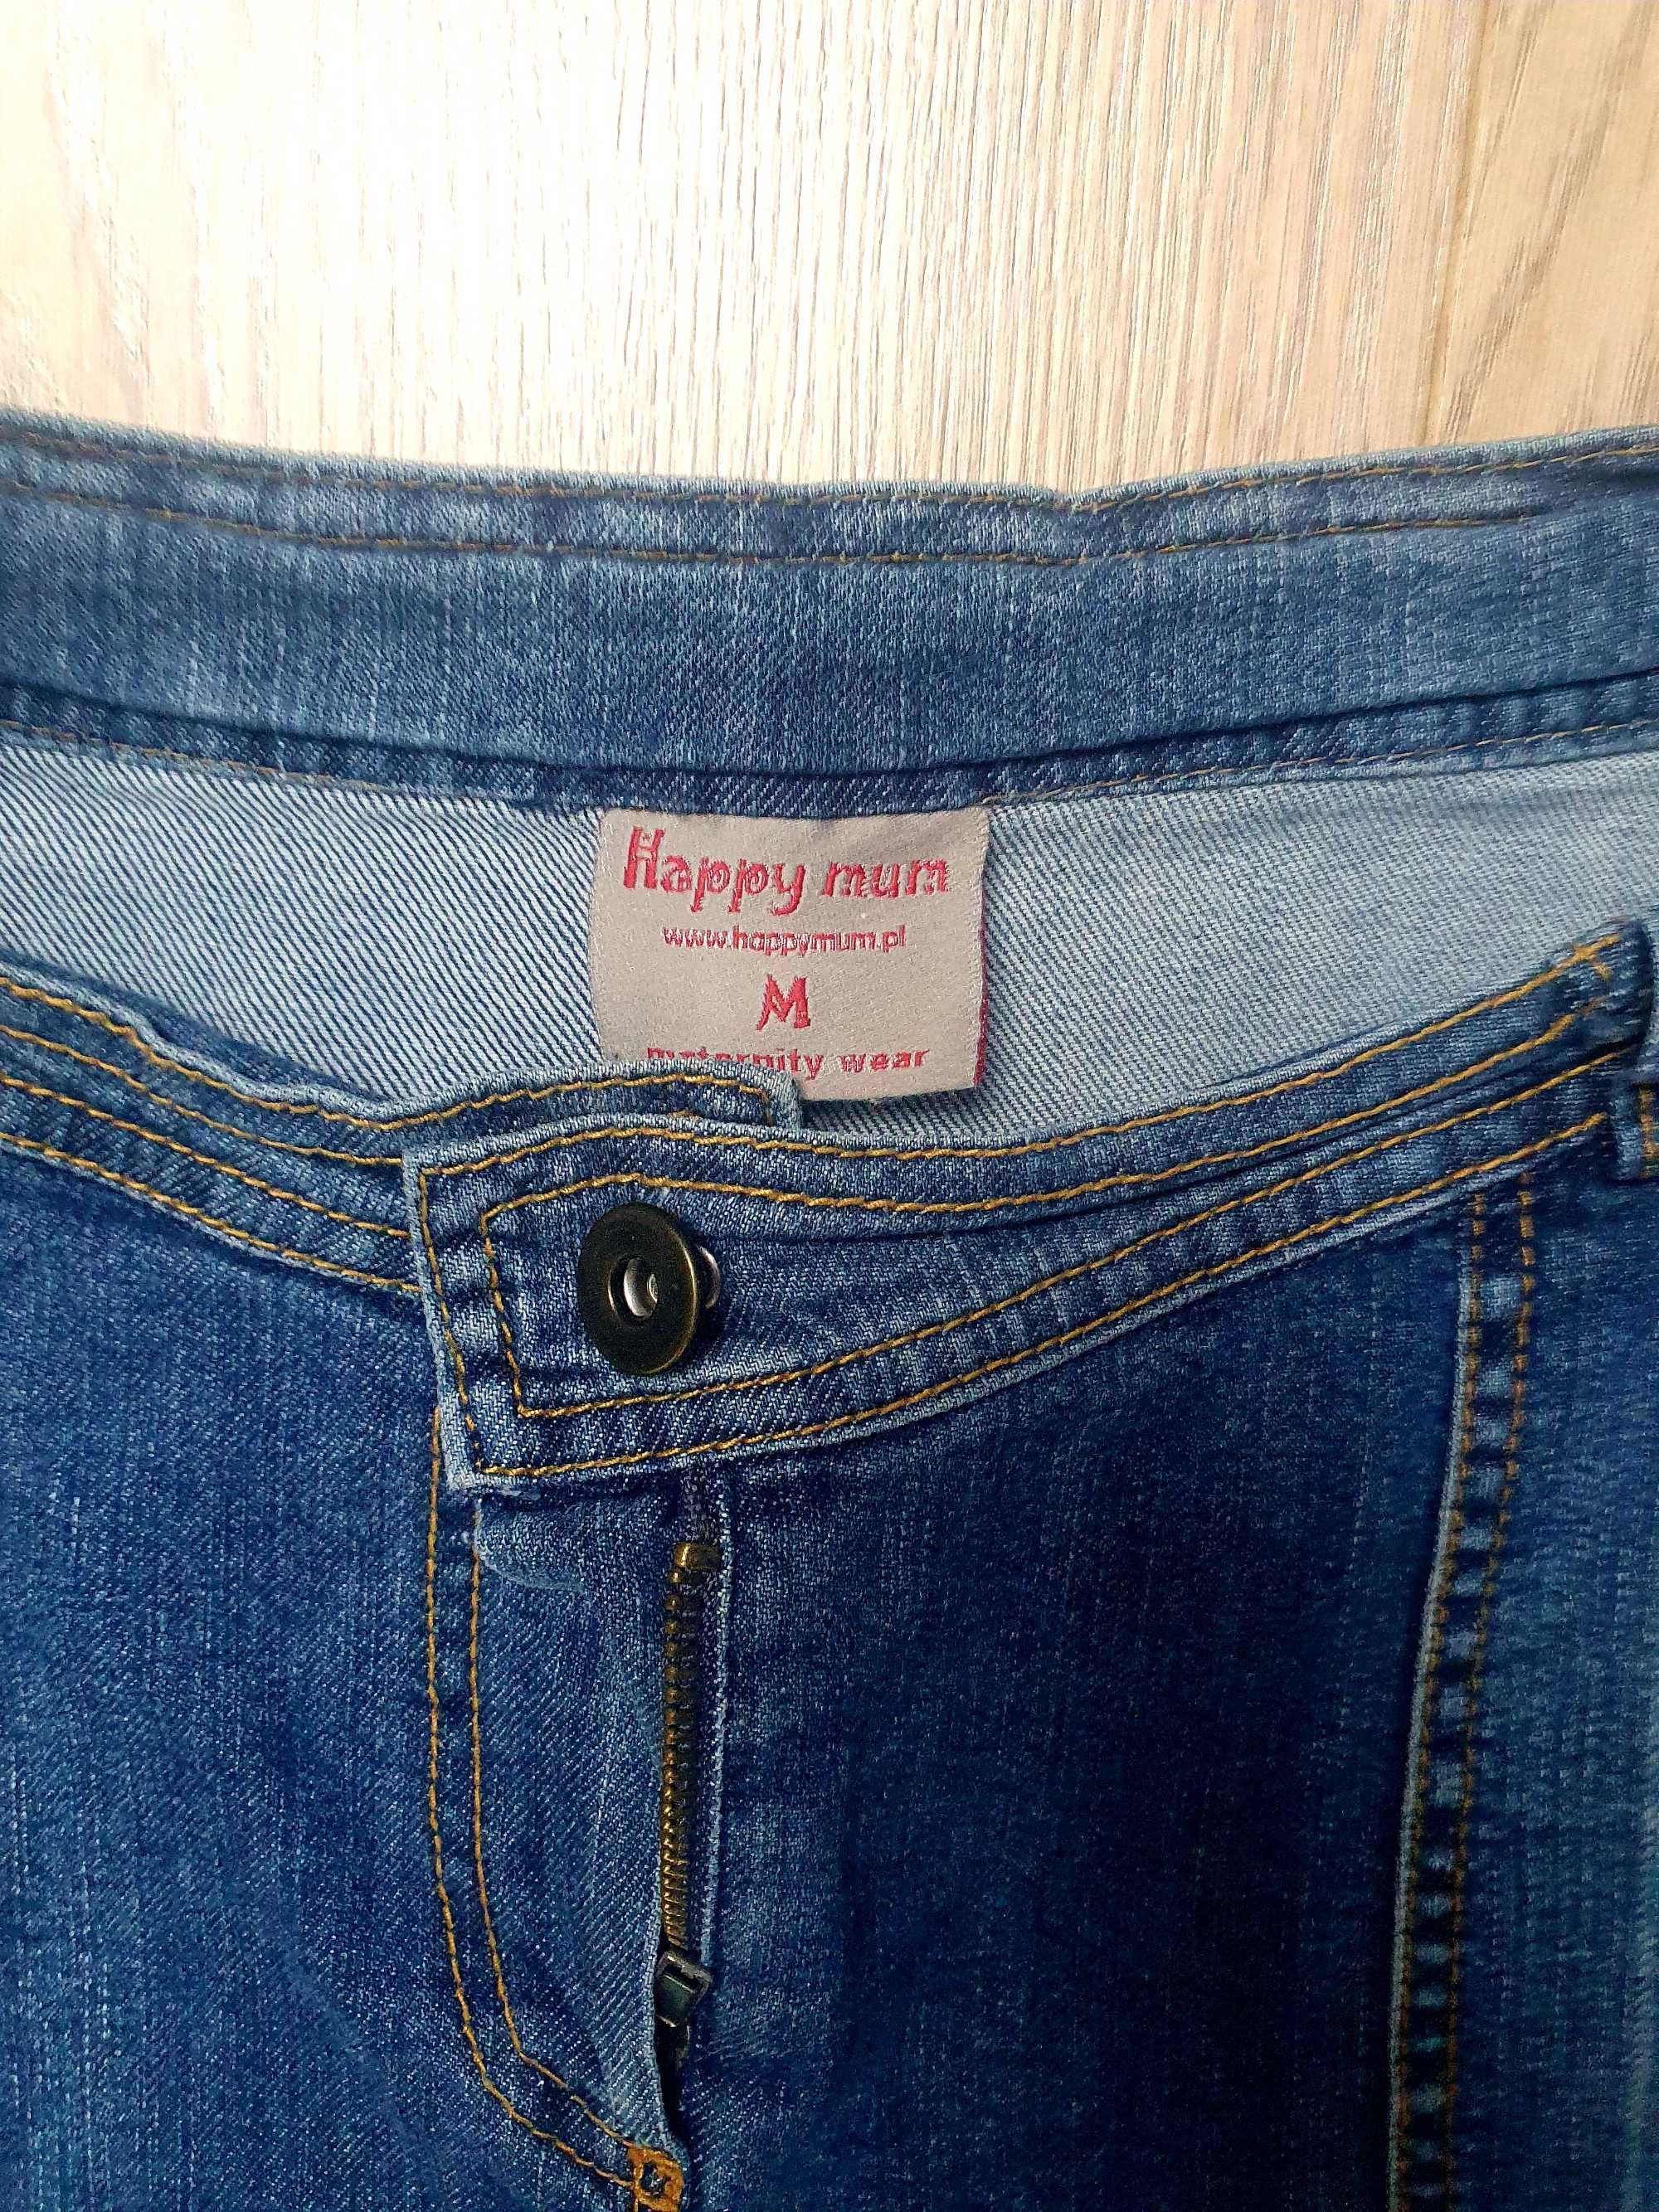 Spódnica ciążowa #Happy Mum  #jeans #rozm M #Sprzedam